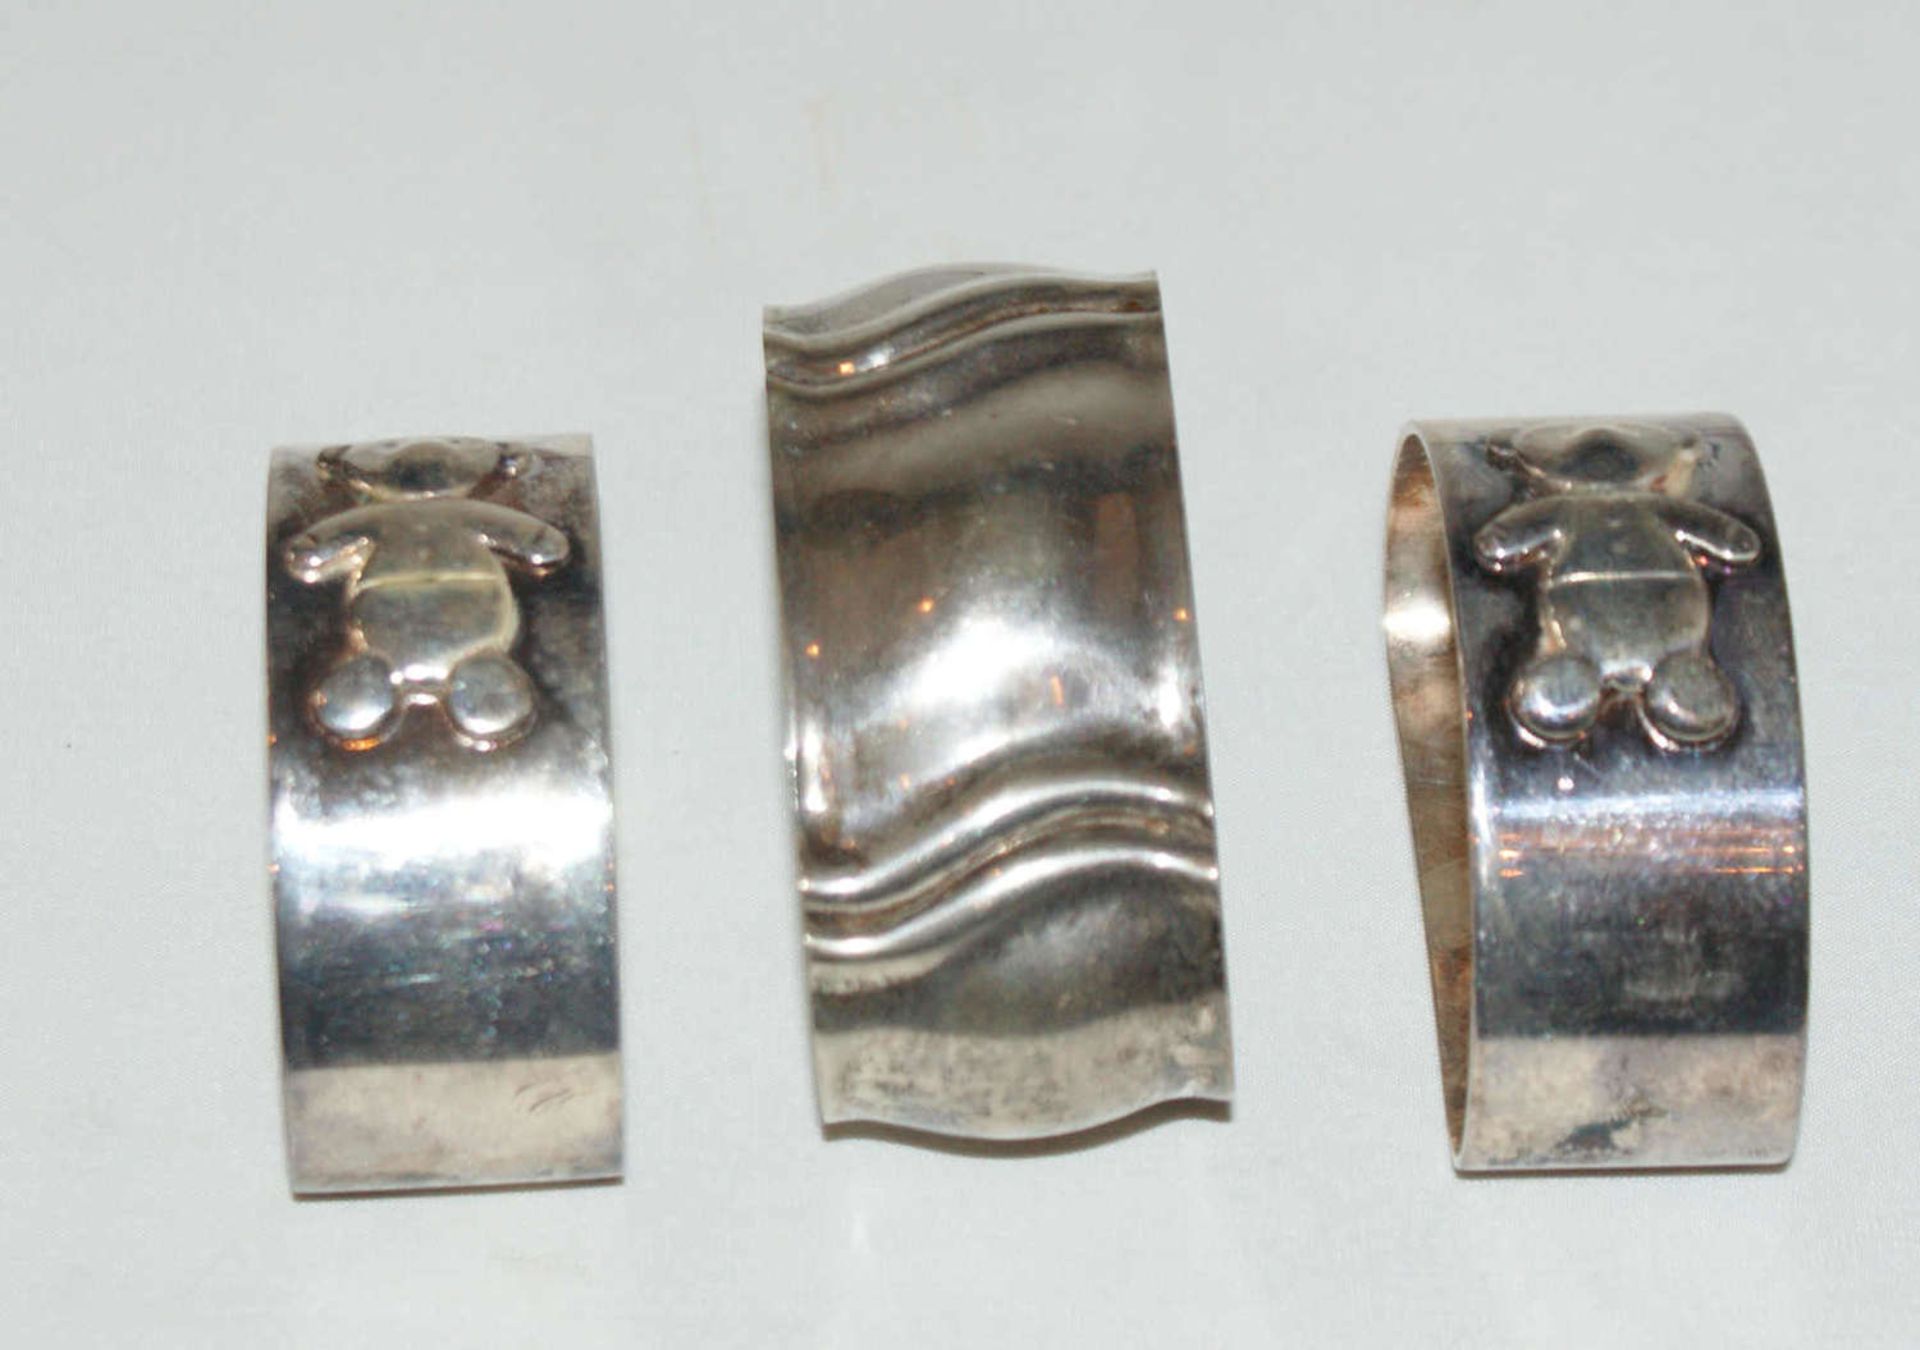 3 Serviettenringe, Silber, Gewicht ca. 91,3 gr. 2 Serviettenringe mit Bärchen verziert.